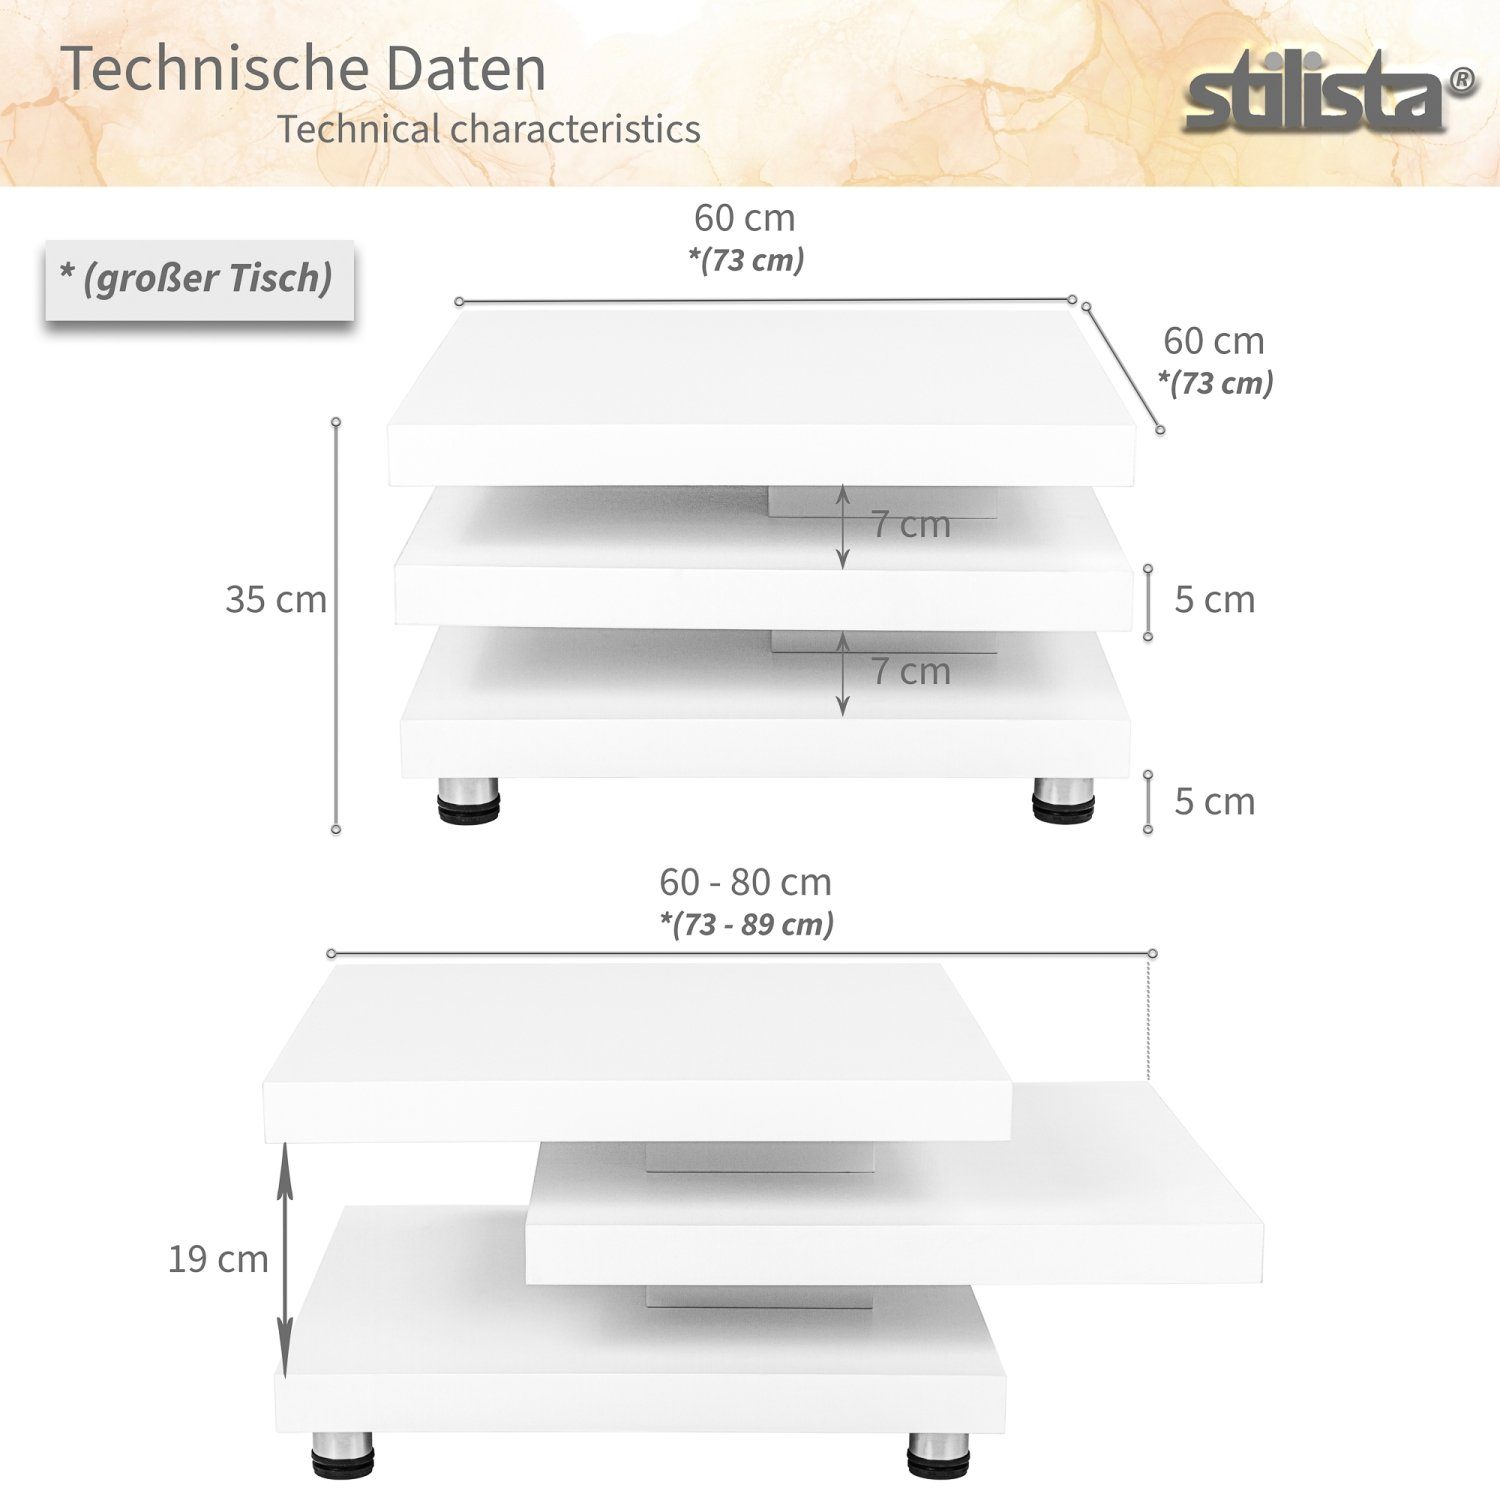 STILISTA Cube-Design, Größenwahl 360° Weiß und schwenkbare Farb- Beistelltisch Wohnzimmertisch Couchtisch Sofatisch, Tischplatten, Hochglanz